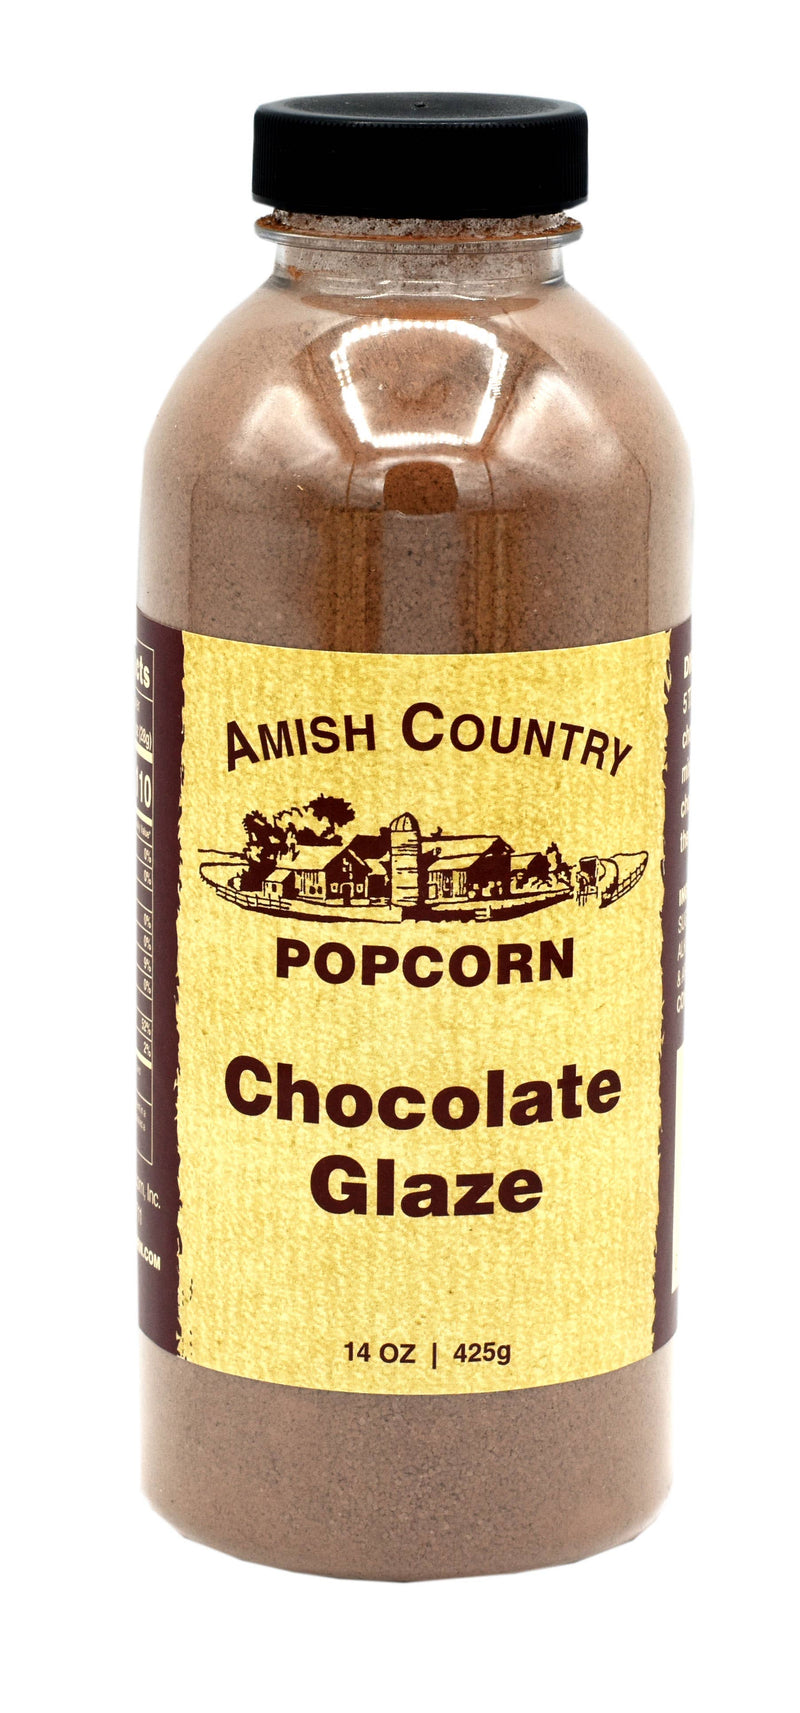 Amish Country Popcorn - 14 oz. Bottle of Chocolate Glaze